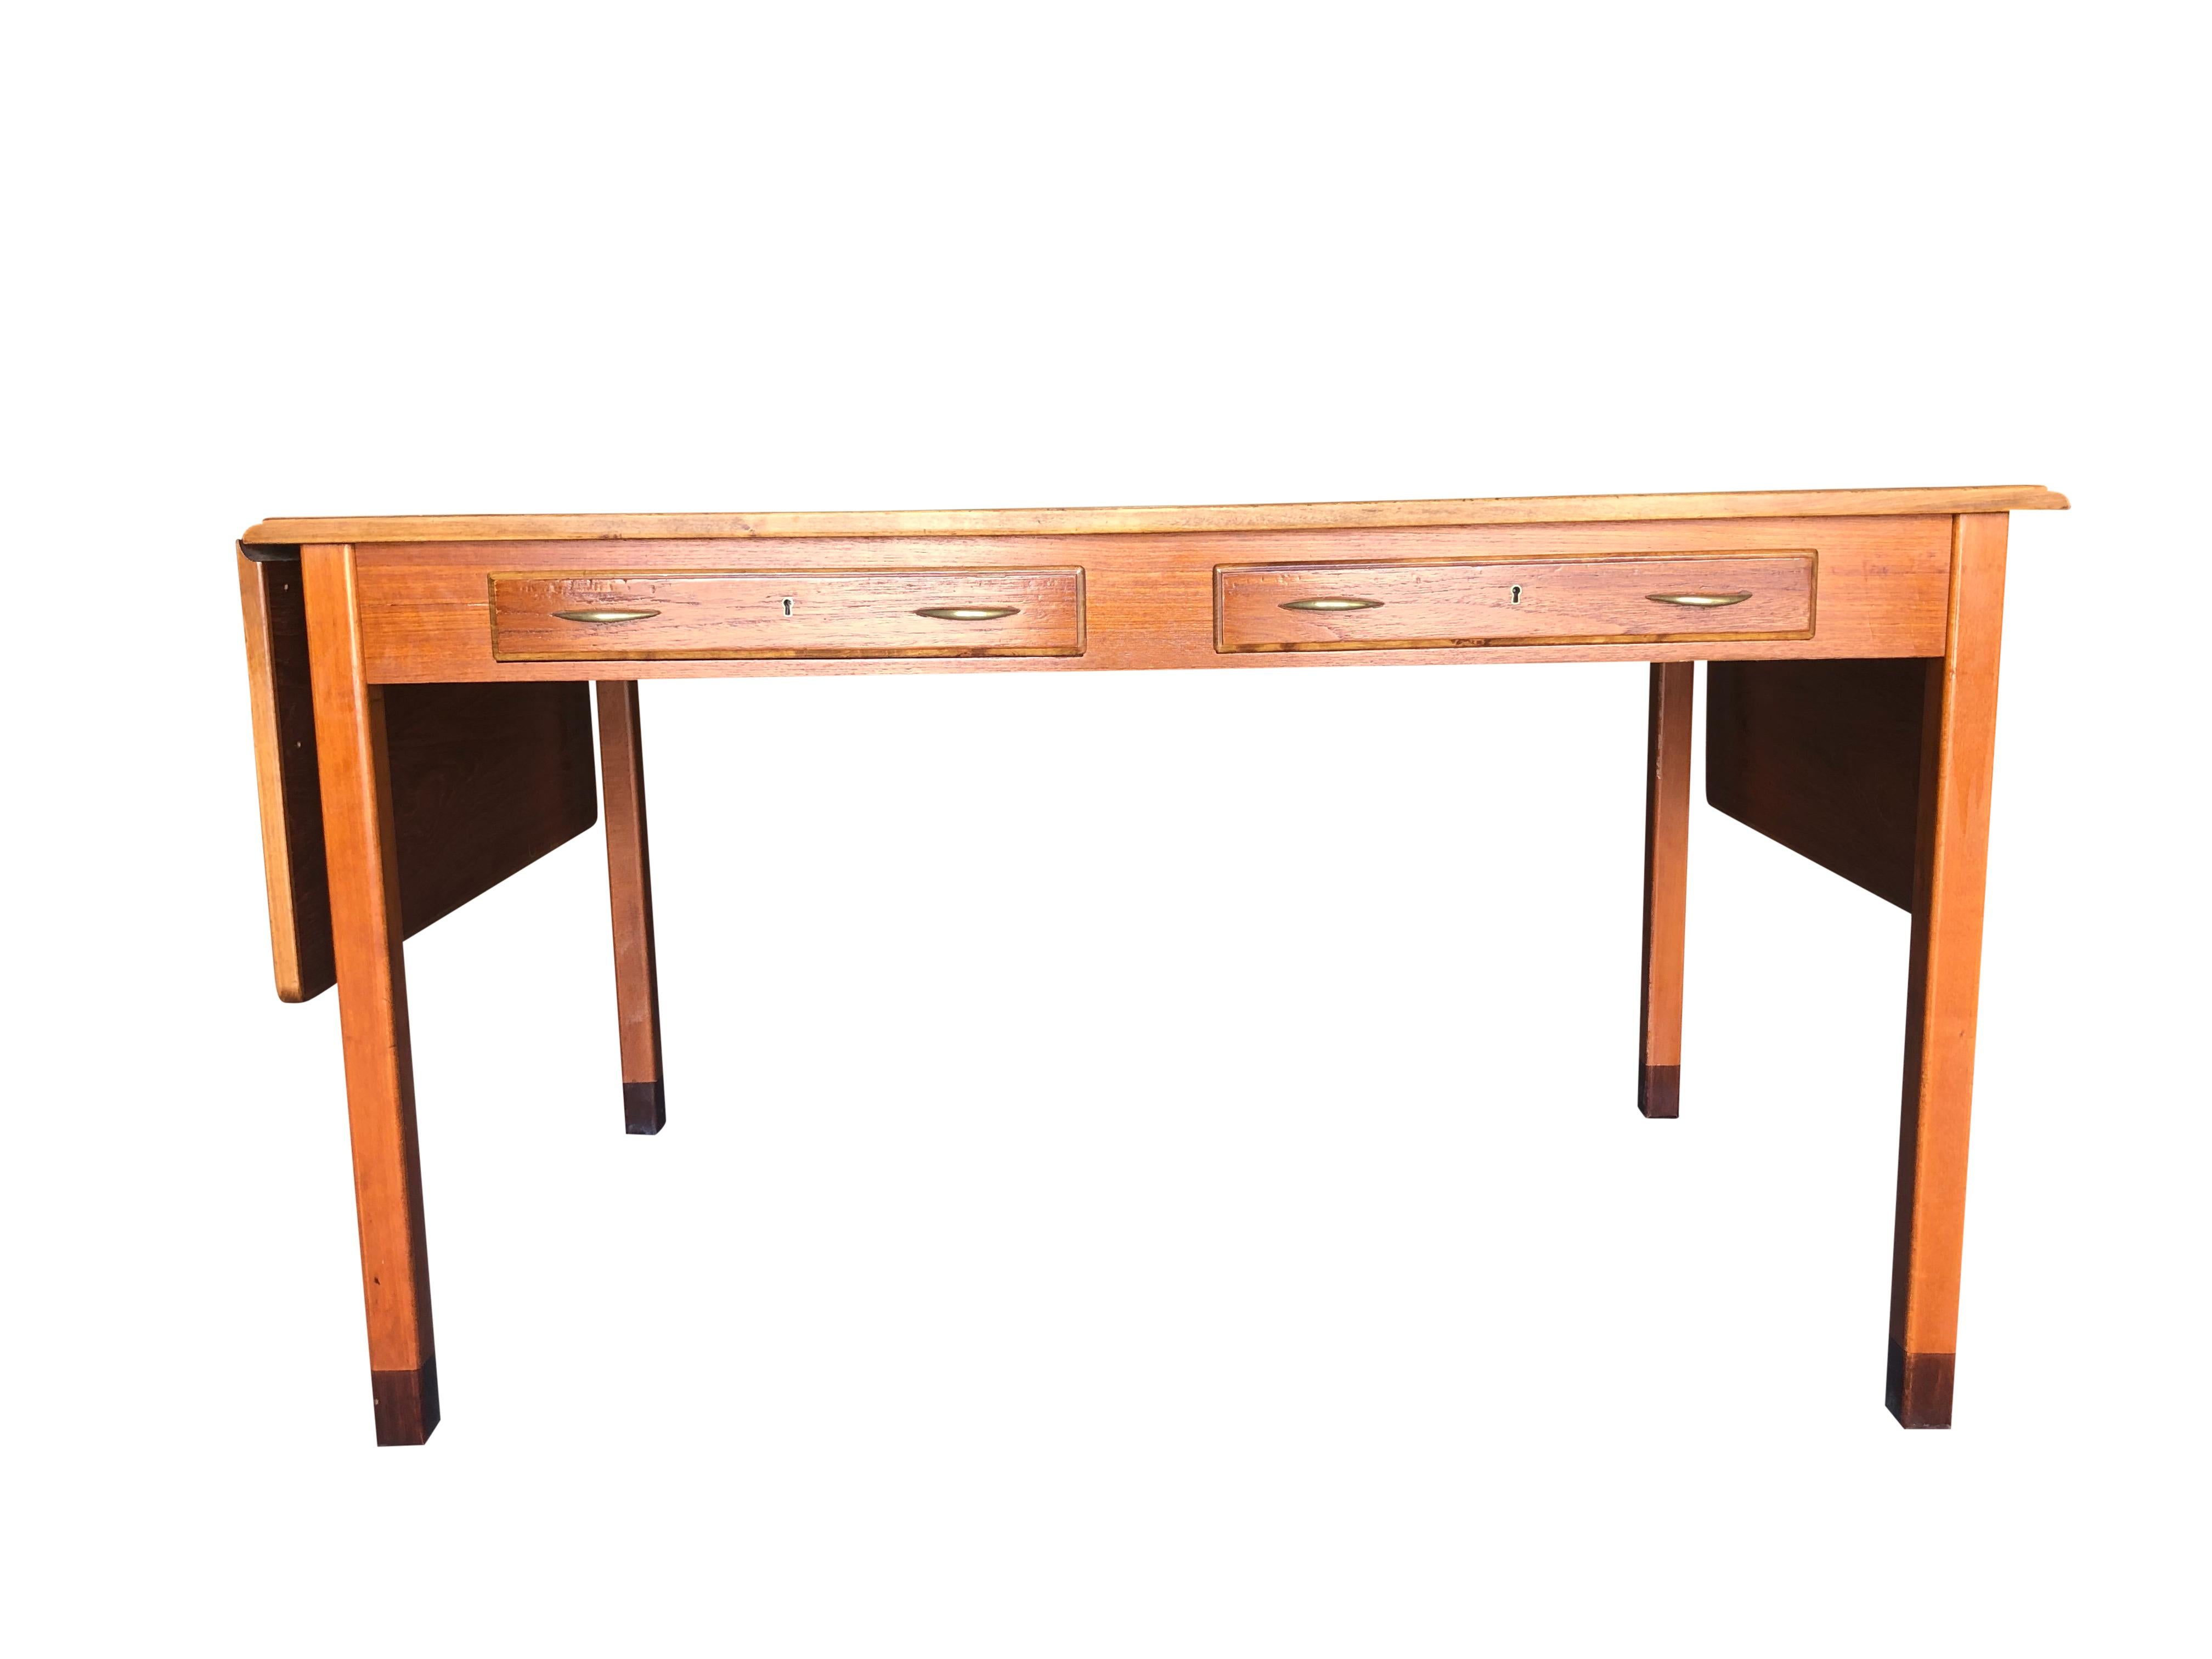 Ein schwedischer Schreibtisch, Tisch oder Sekretär aus der Mitte des Jahrhunderts, entworfen von David Rosen, hergestellt von Nordiska Kompaniet. Dieses gut gestaltete Möbelstück mit Endstücken ist aus handgefertigtem, poliertem Teakholz gefertigt